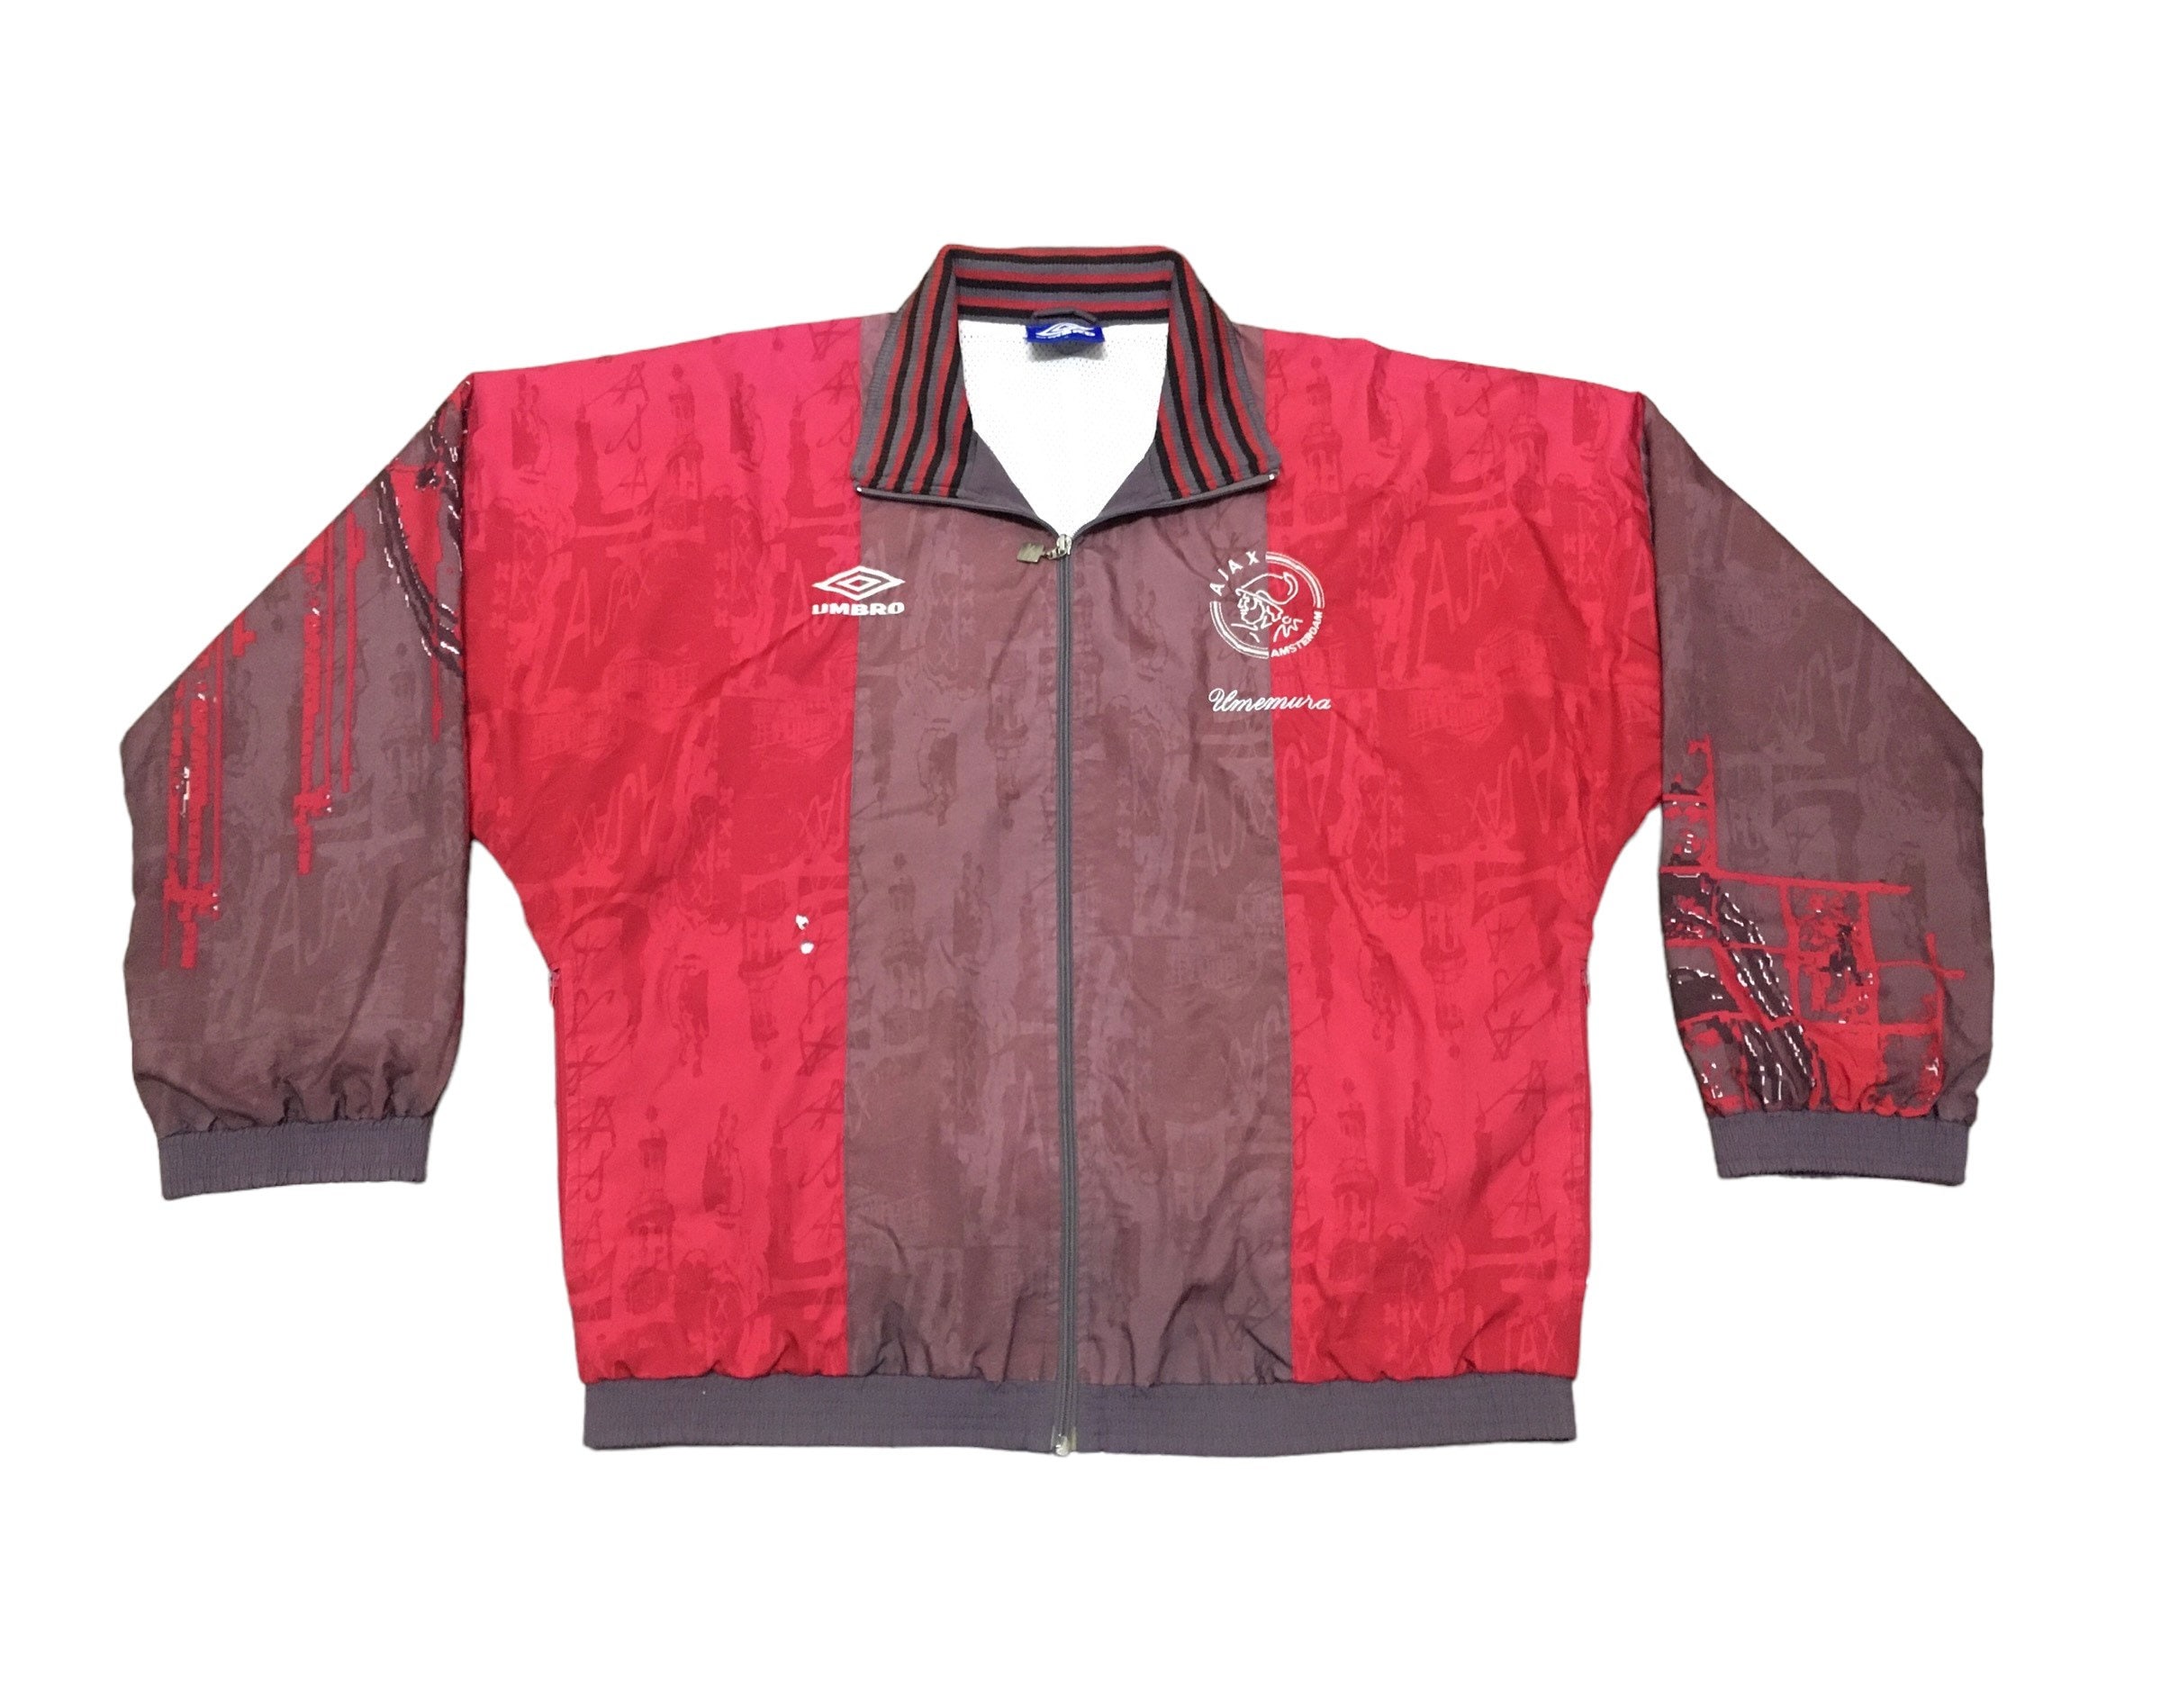 Compatibel met herten Voor u Rare Design Vintage Football Team Umbro Ajax Jacket 1990s - Etsy